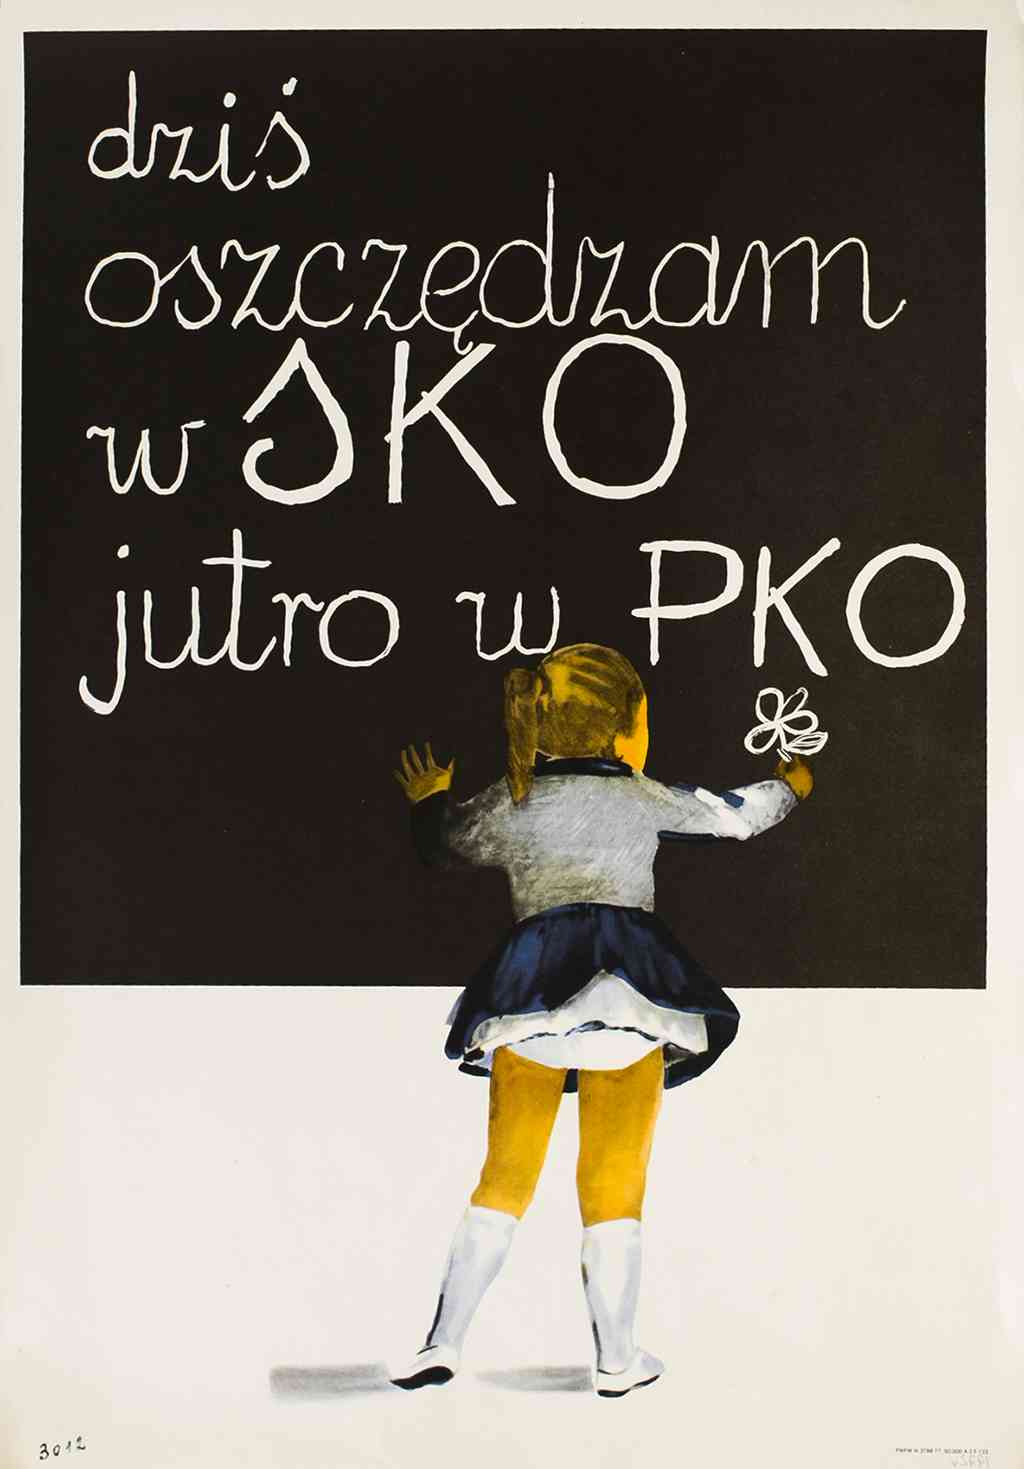 Plakat promujący konkurs Dziś oszczędzam w SKO, jutro w PKO (1972 r.)